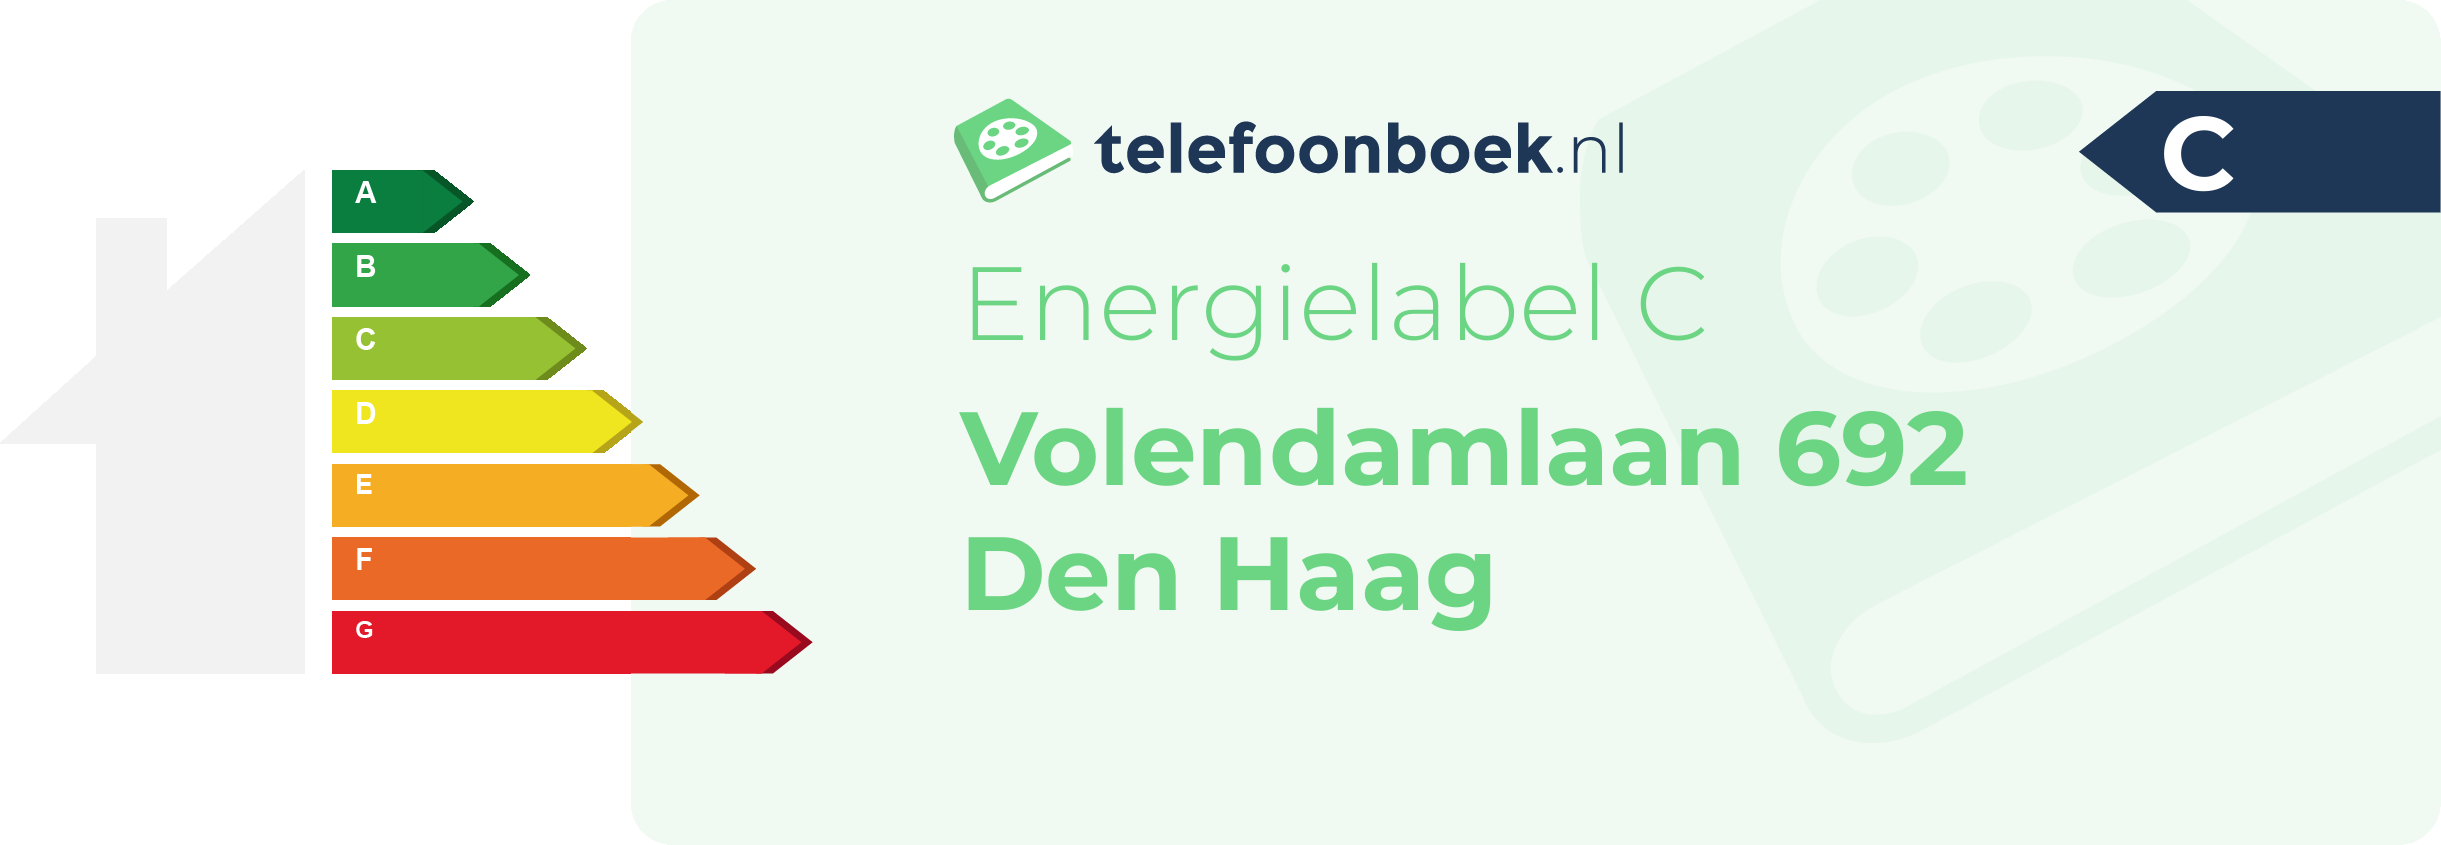 Energielabel Volendamlaan 692 Den Haag